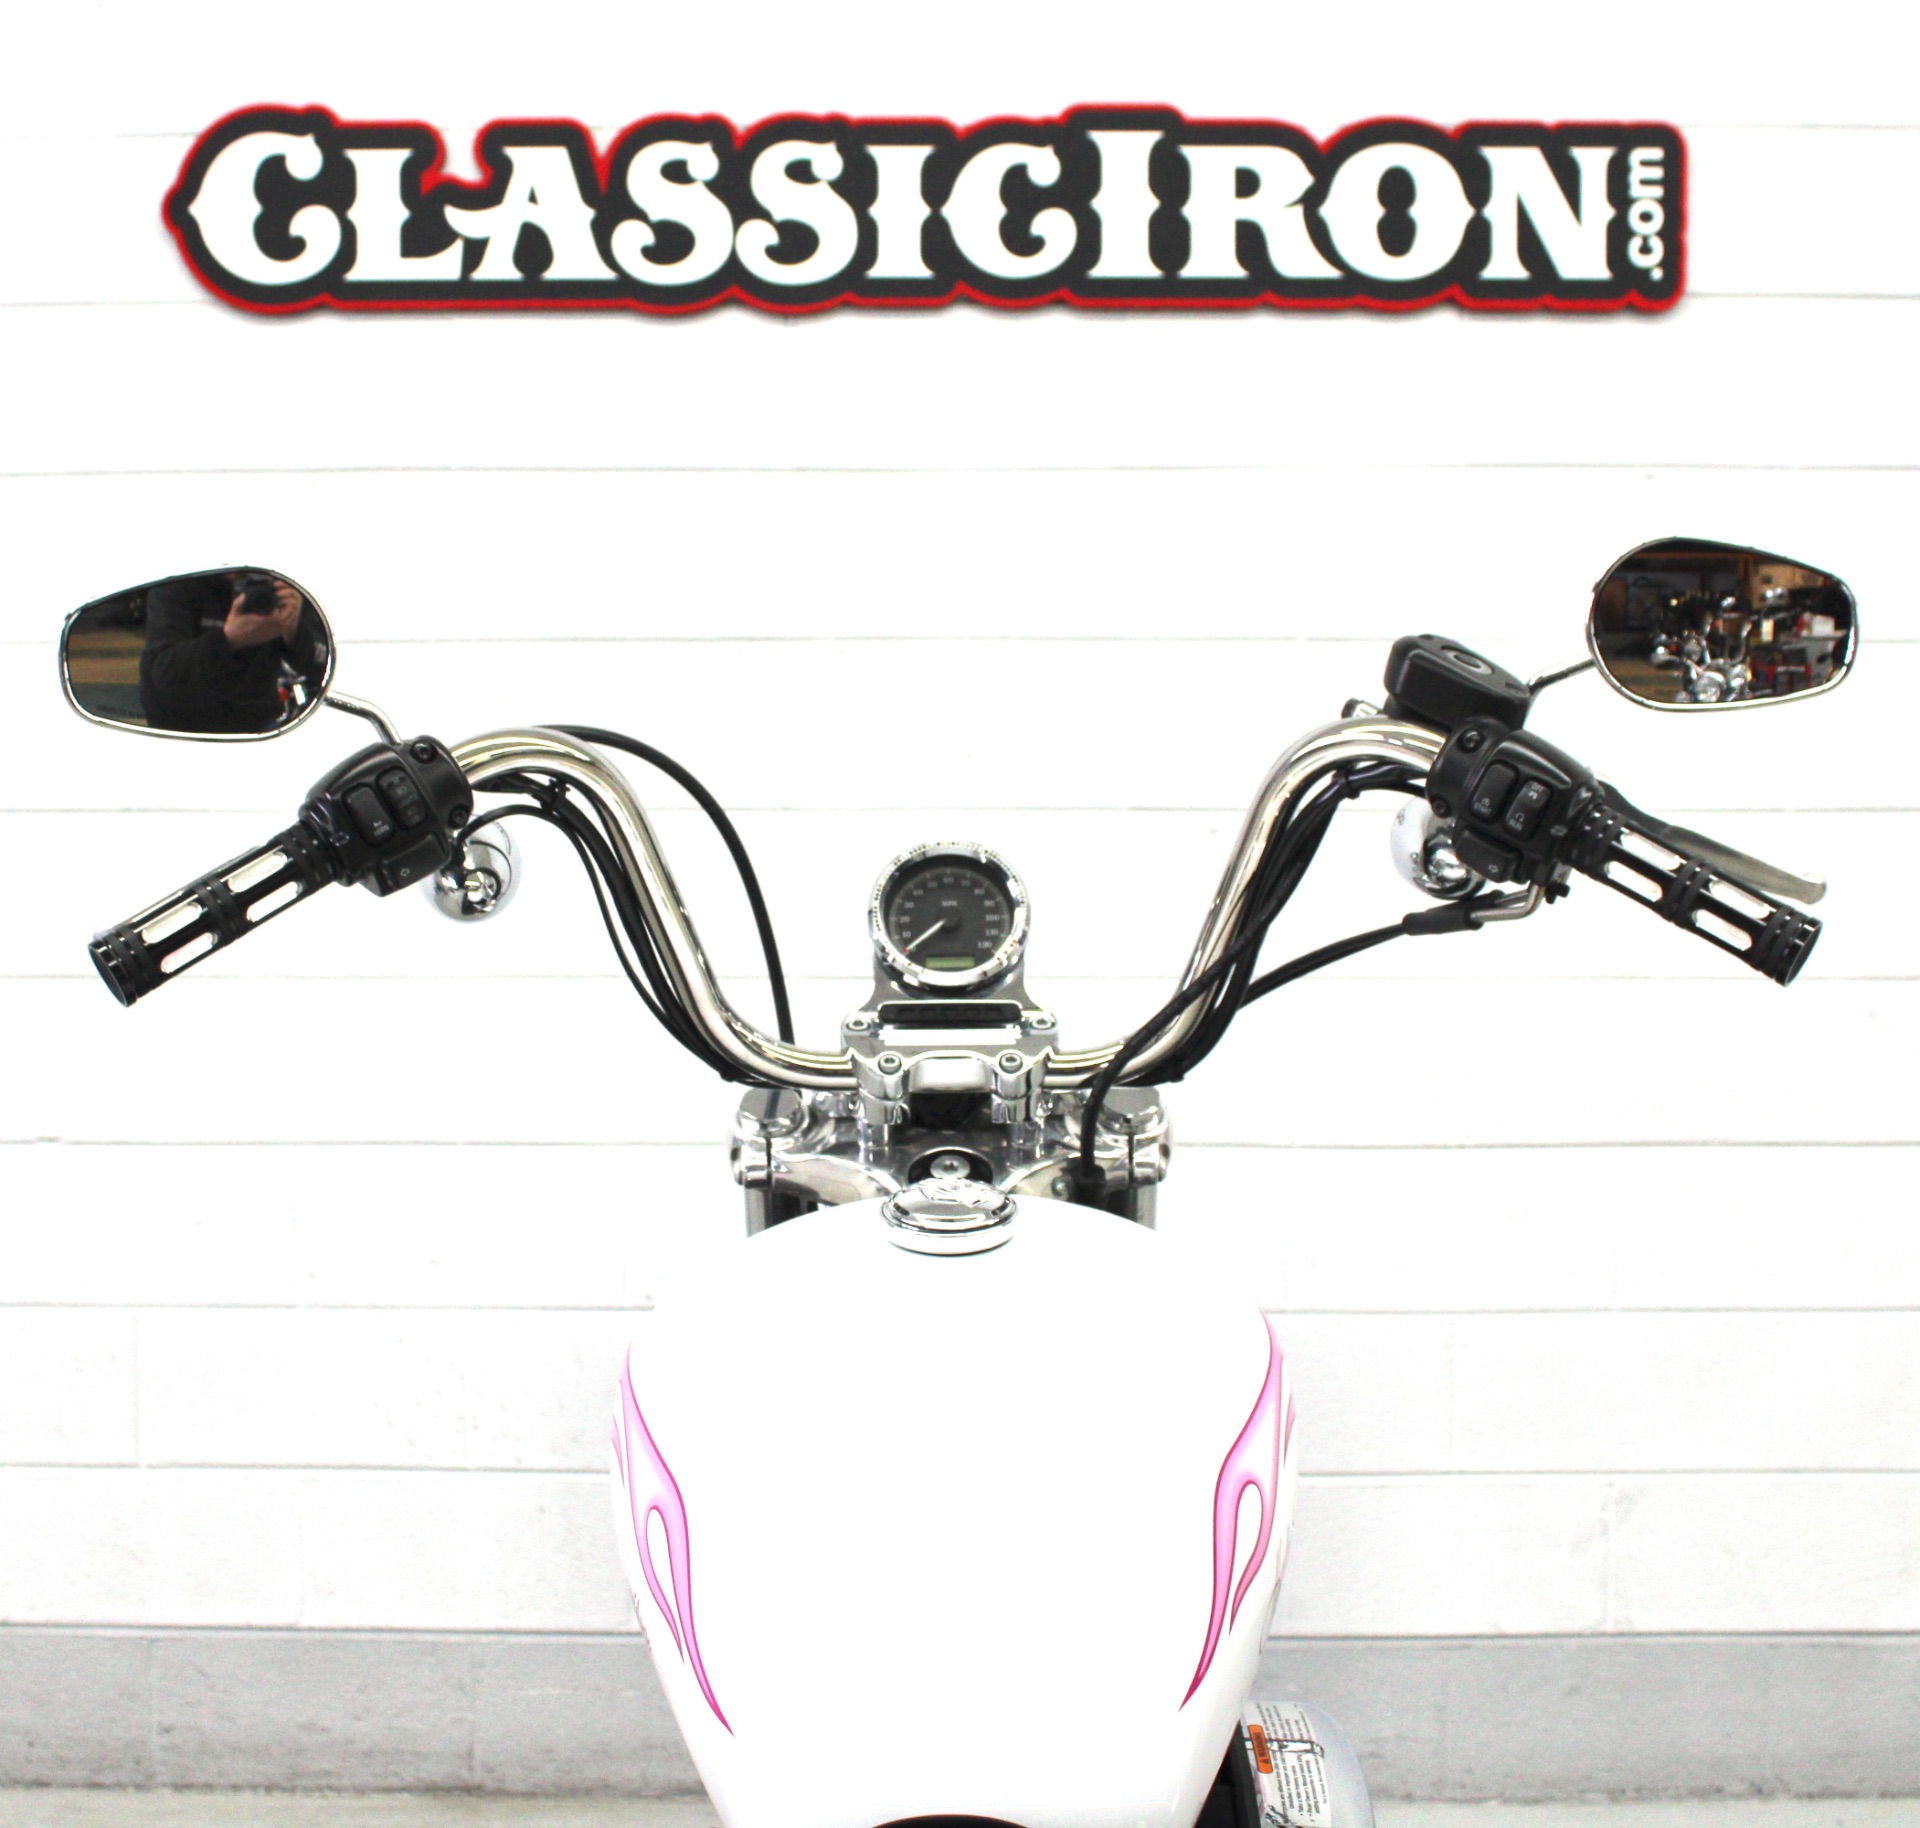 2012 Harley-Davidson Sportster® 1200 Custom in Fredericksburg, Virginia - Photo 10